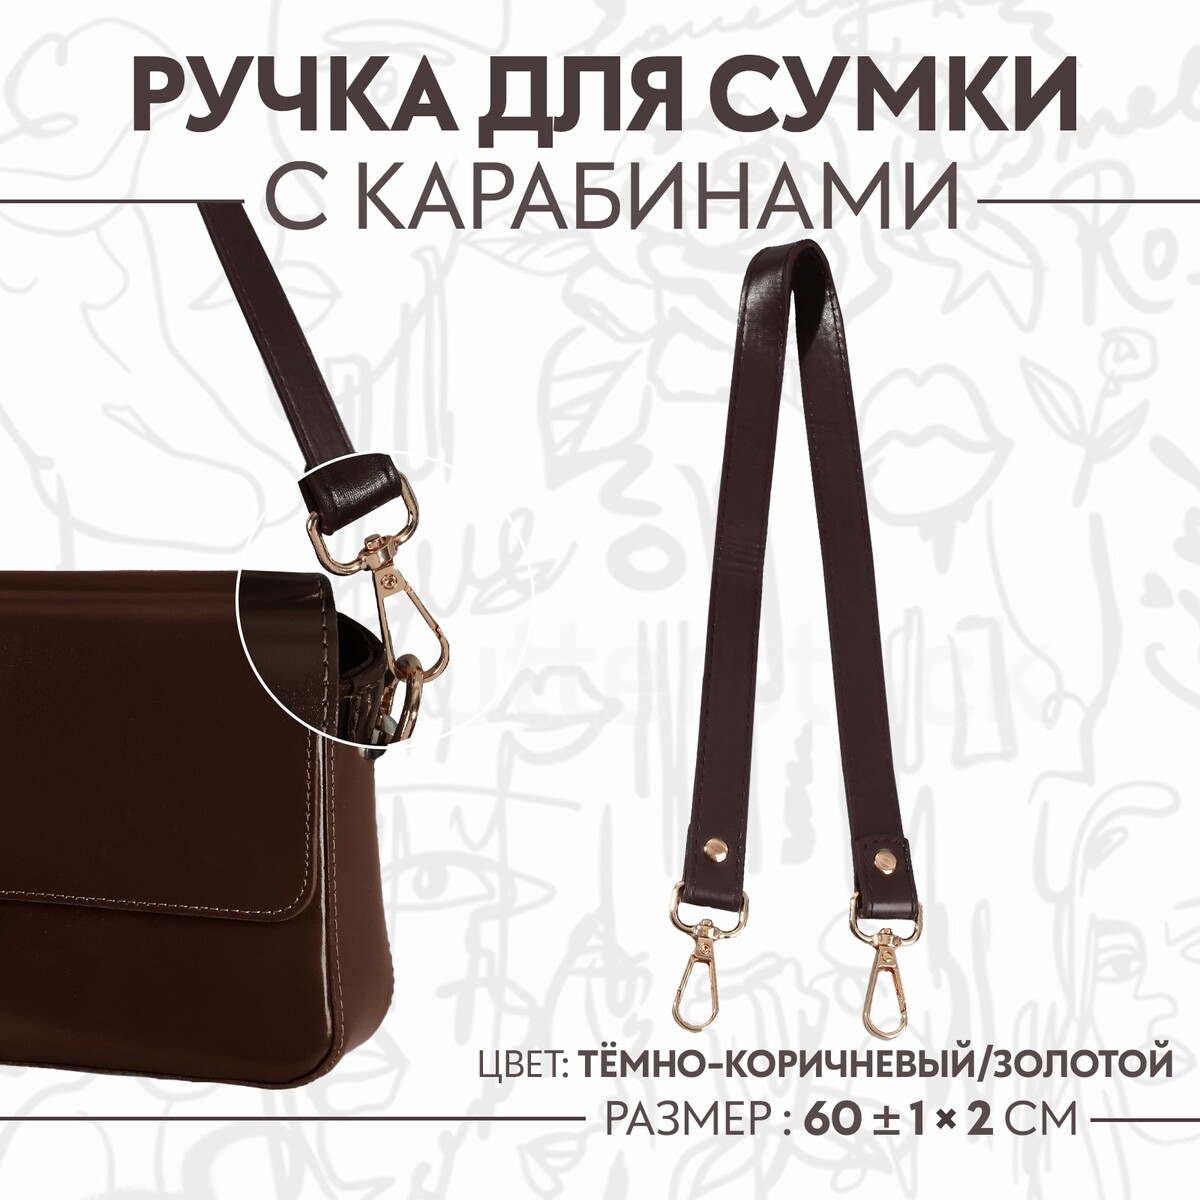 Ручка для сумки, с карабинами, 60 ± 1 см × 2 см, цвет темно-коричневый ручка шнурок для сумки с карабинами 120 × 0 6 см коричневый